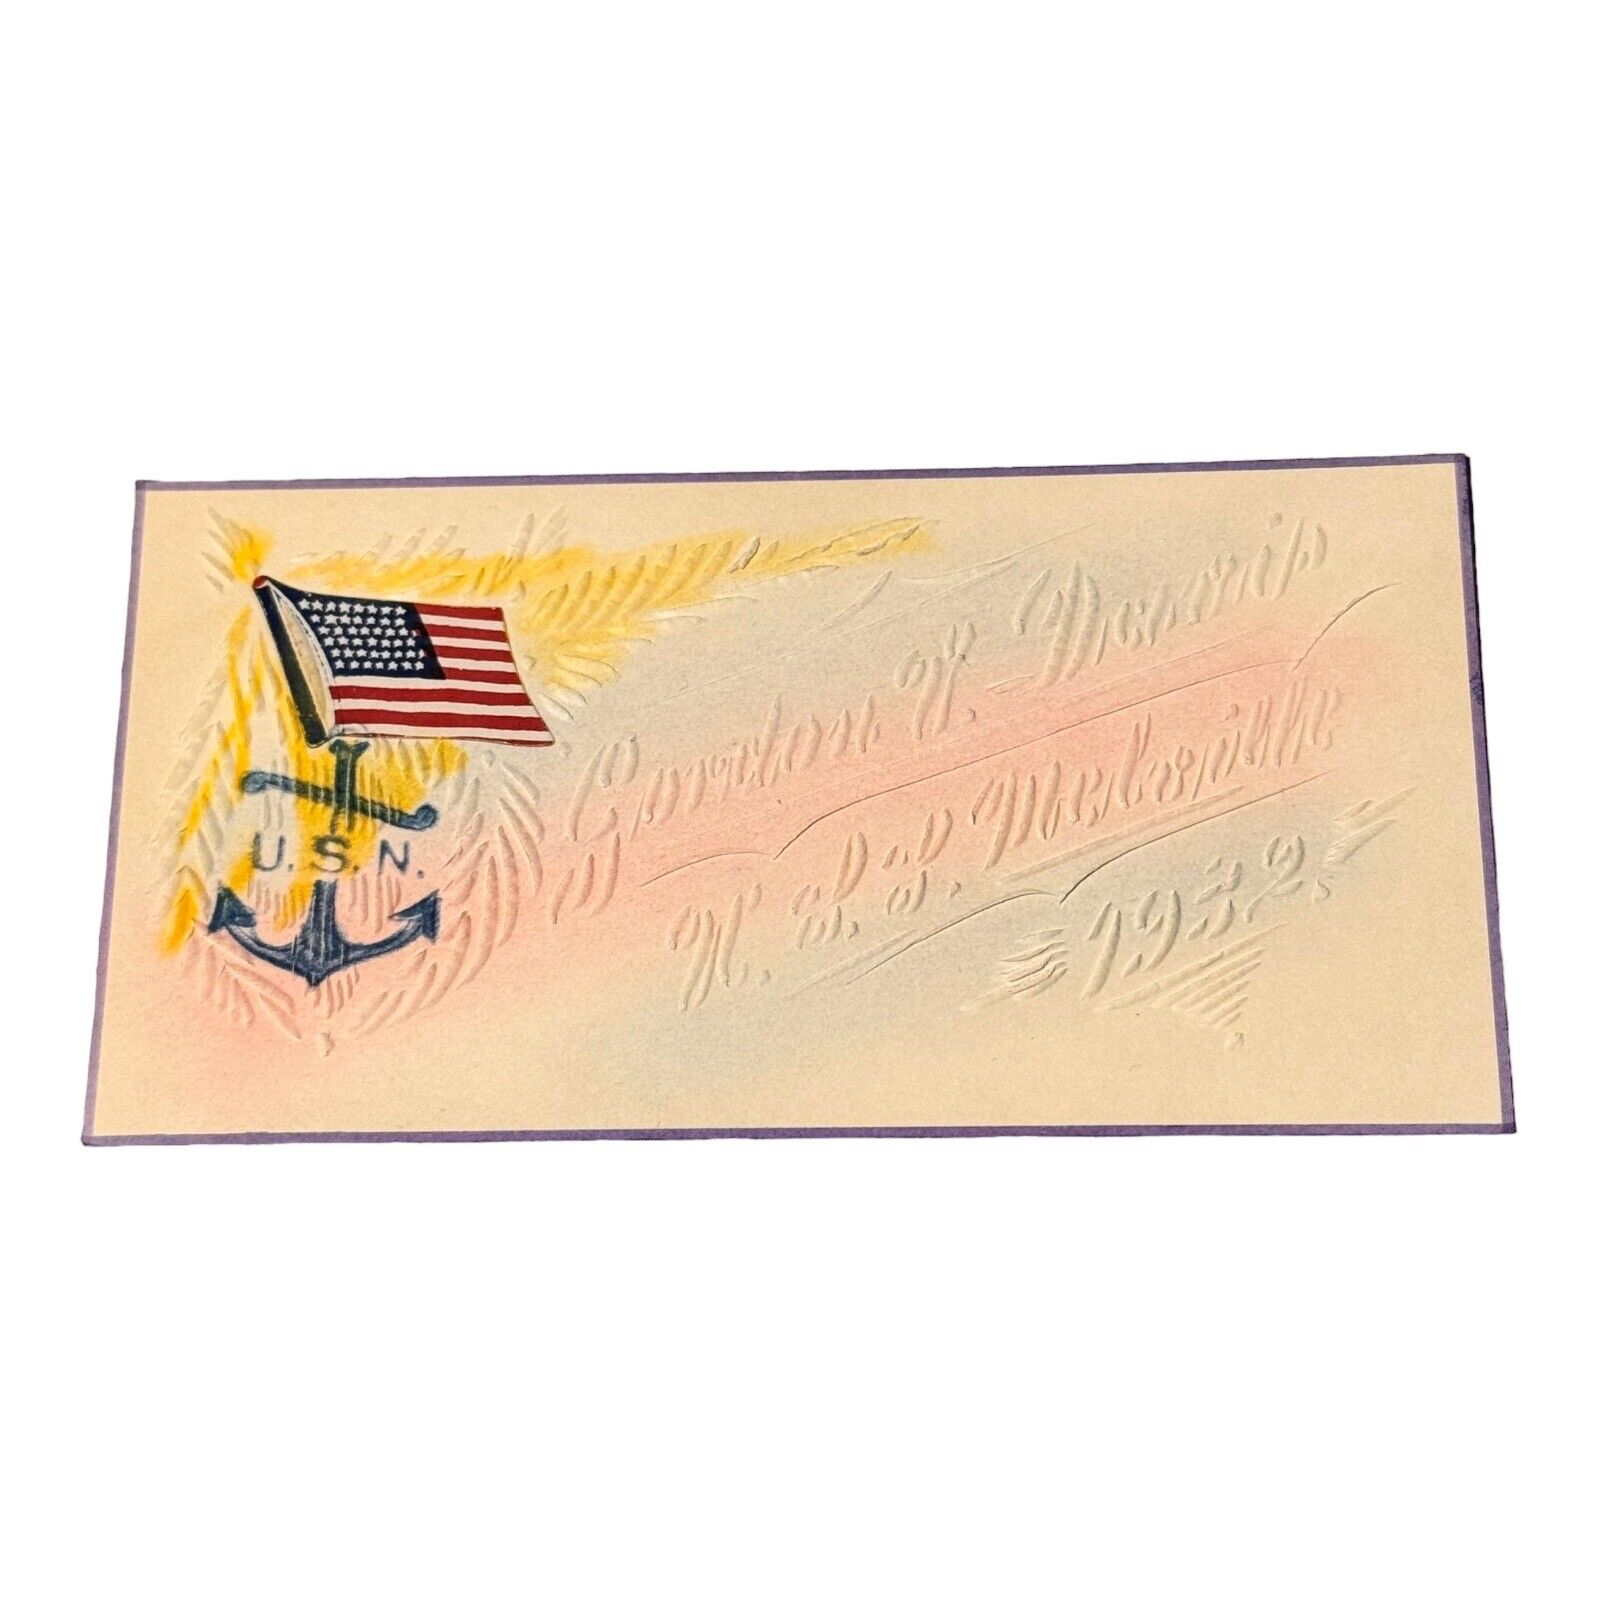 U.S.S. Melville Vintage Sailor Card Embossed 1932 USN